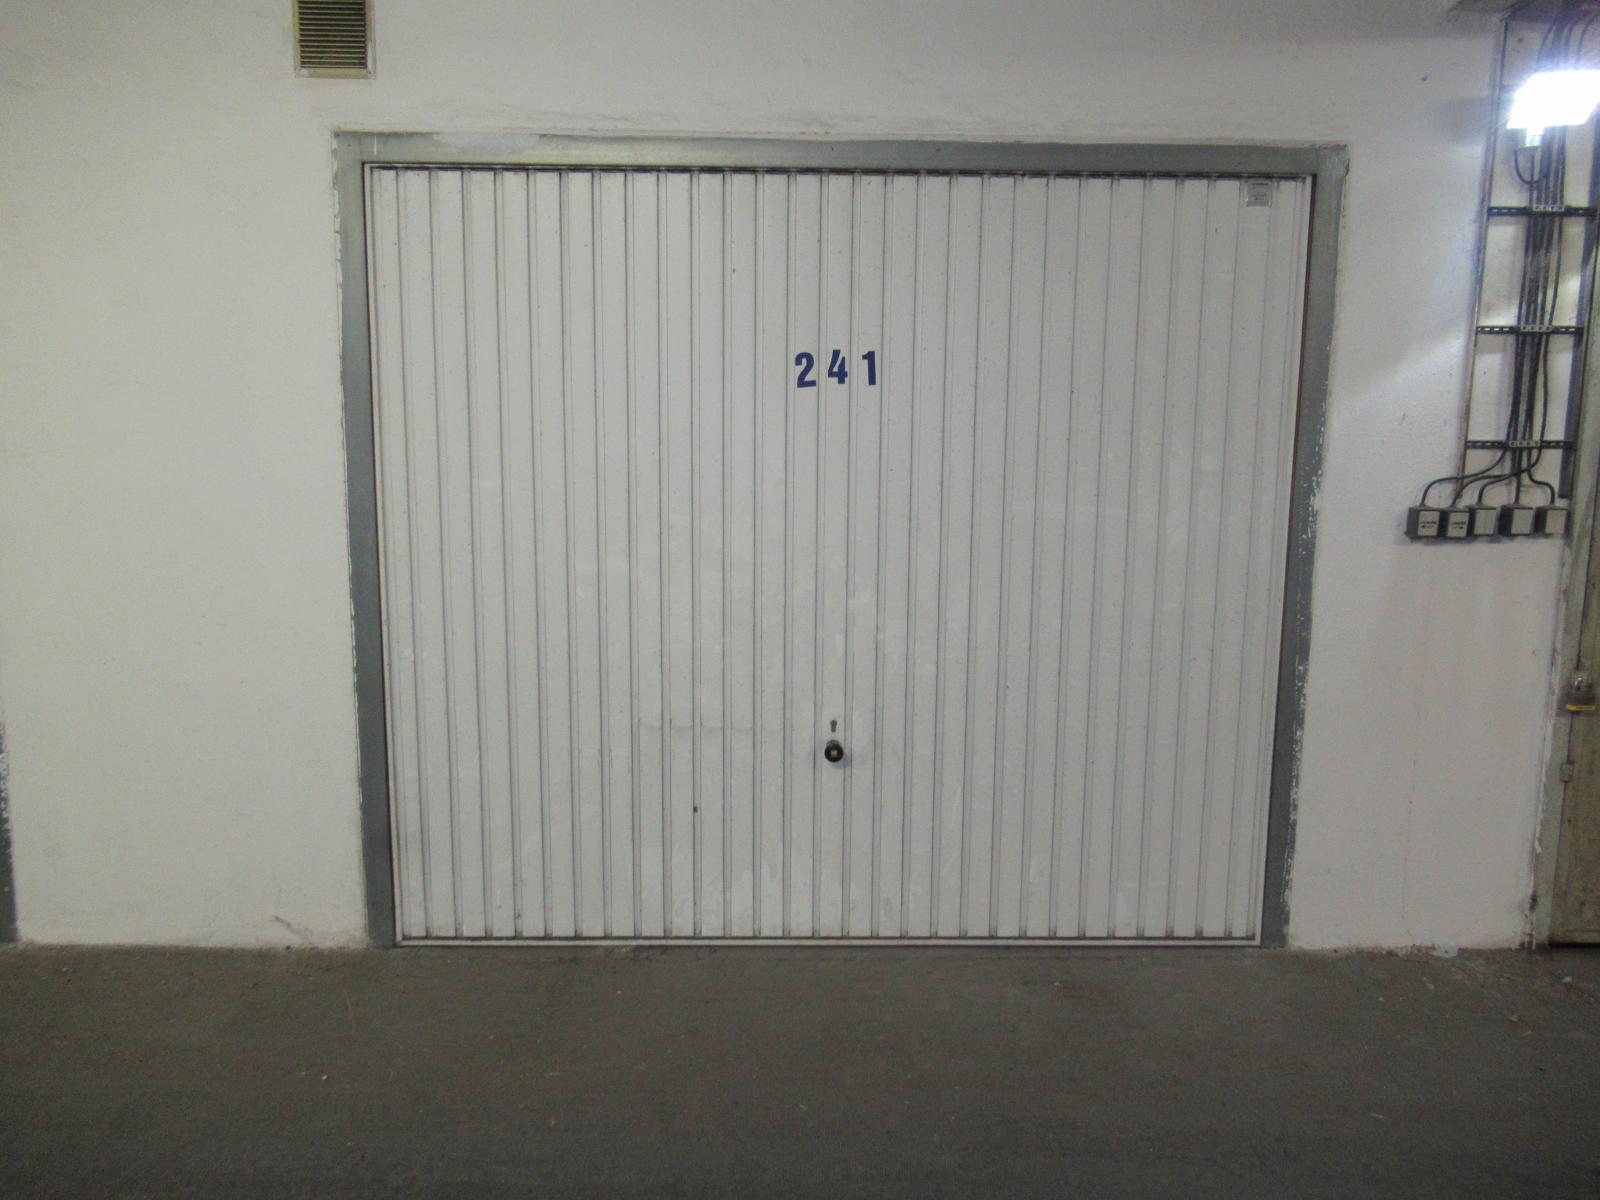 Pronájem samostatné garáže  18 m2 v garážovém domě v ul. K Dolům, Praha 4 - Modřany, obrázek č. 2